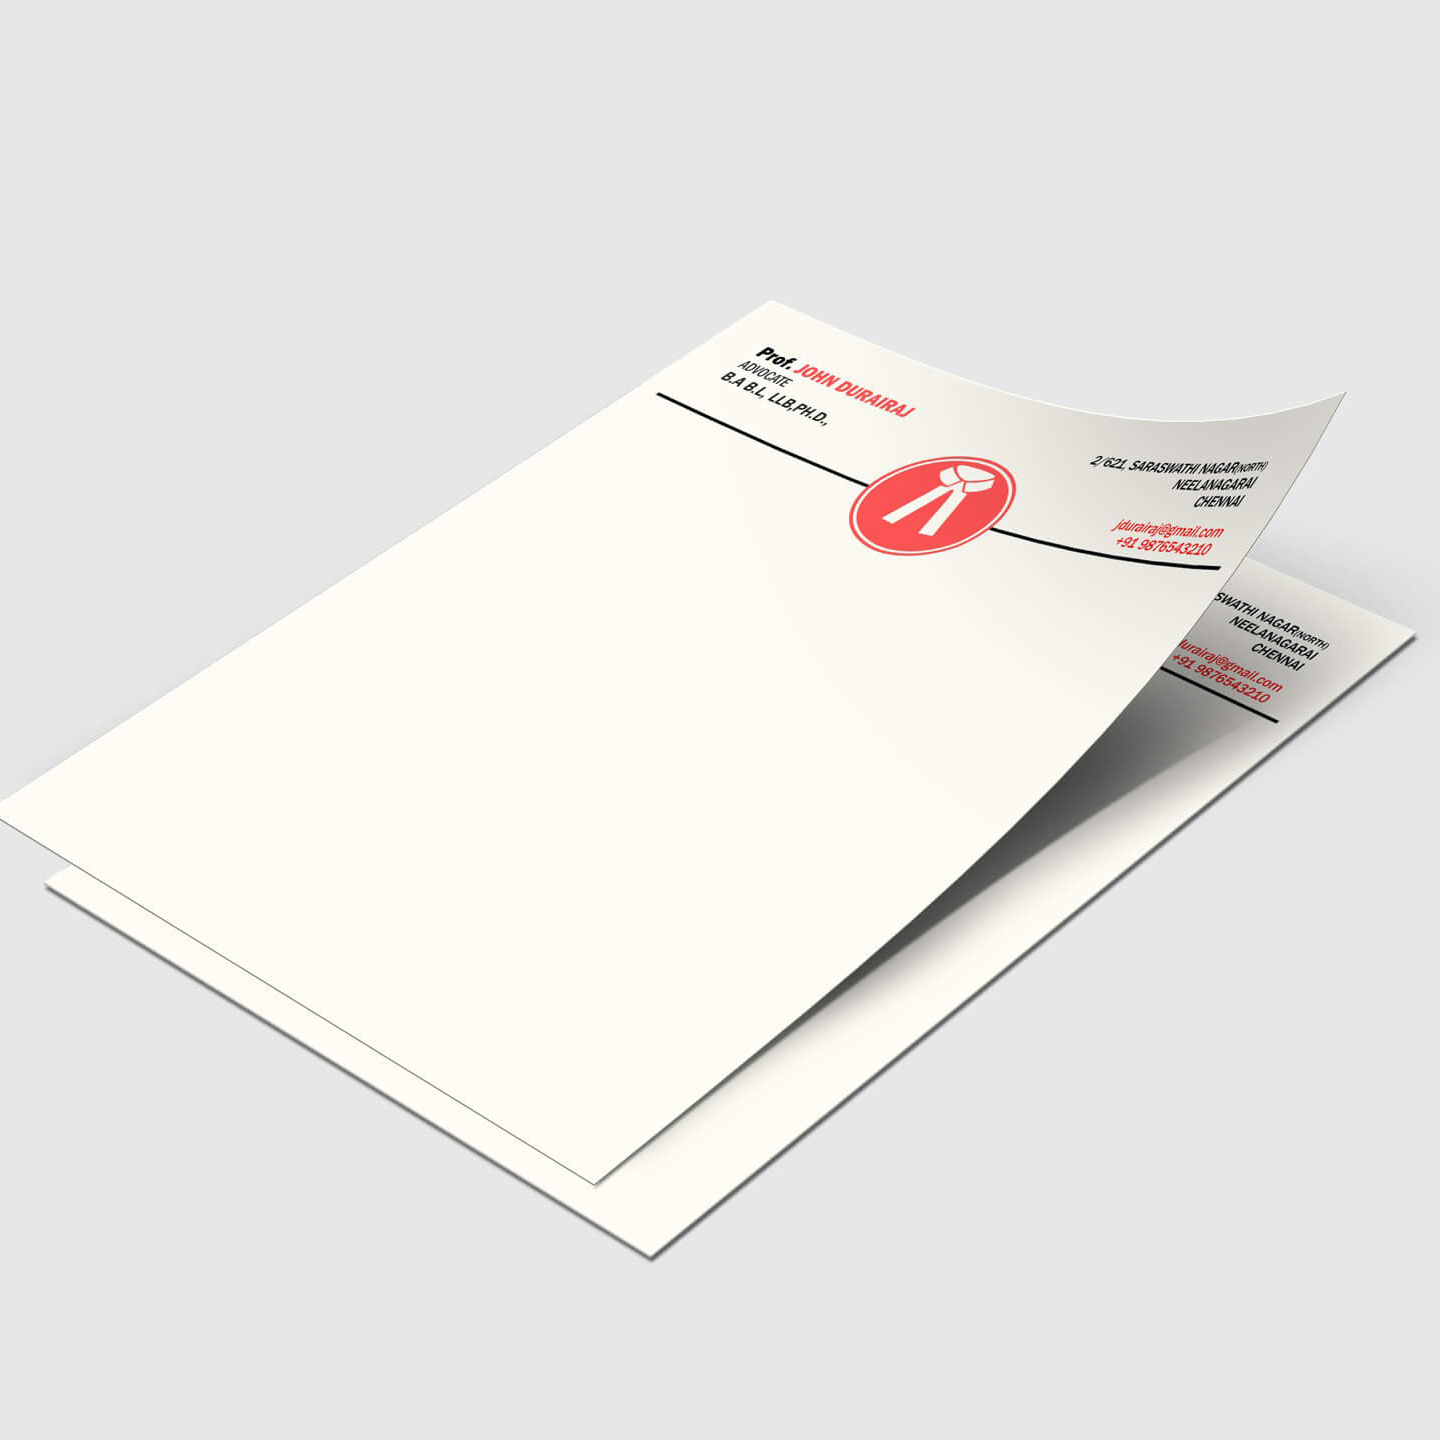 A4 Size Letterhead on Bond Paper  - 1000 nos.